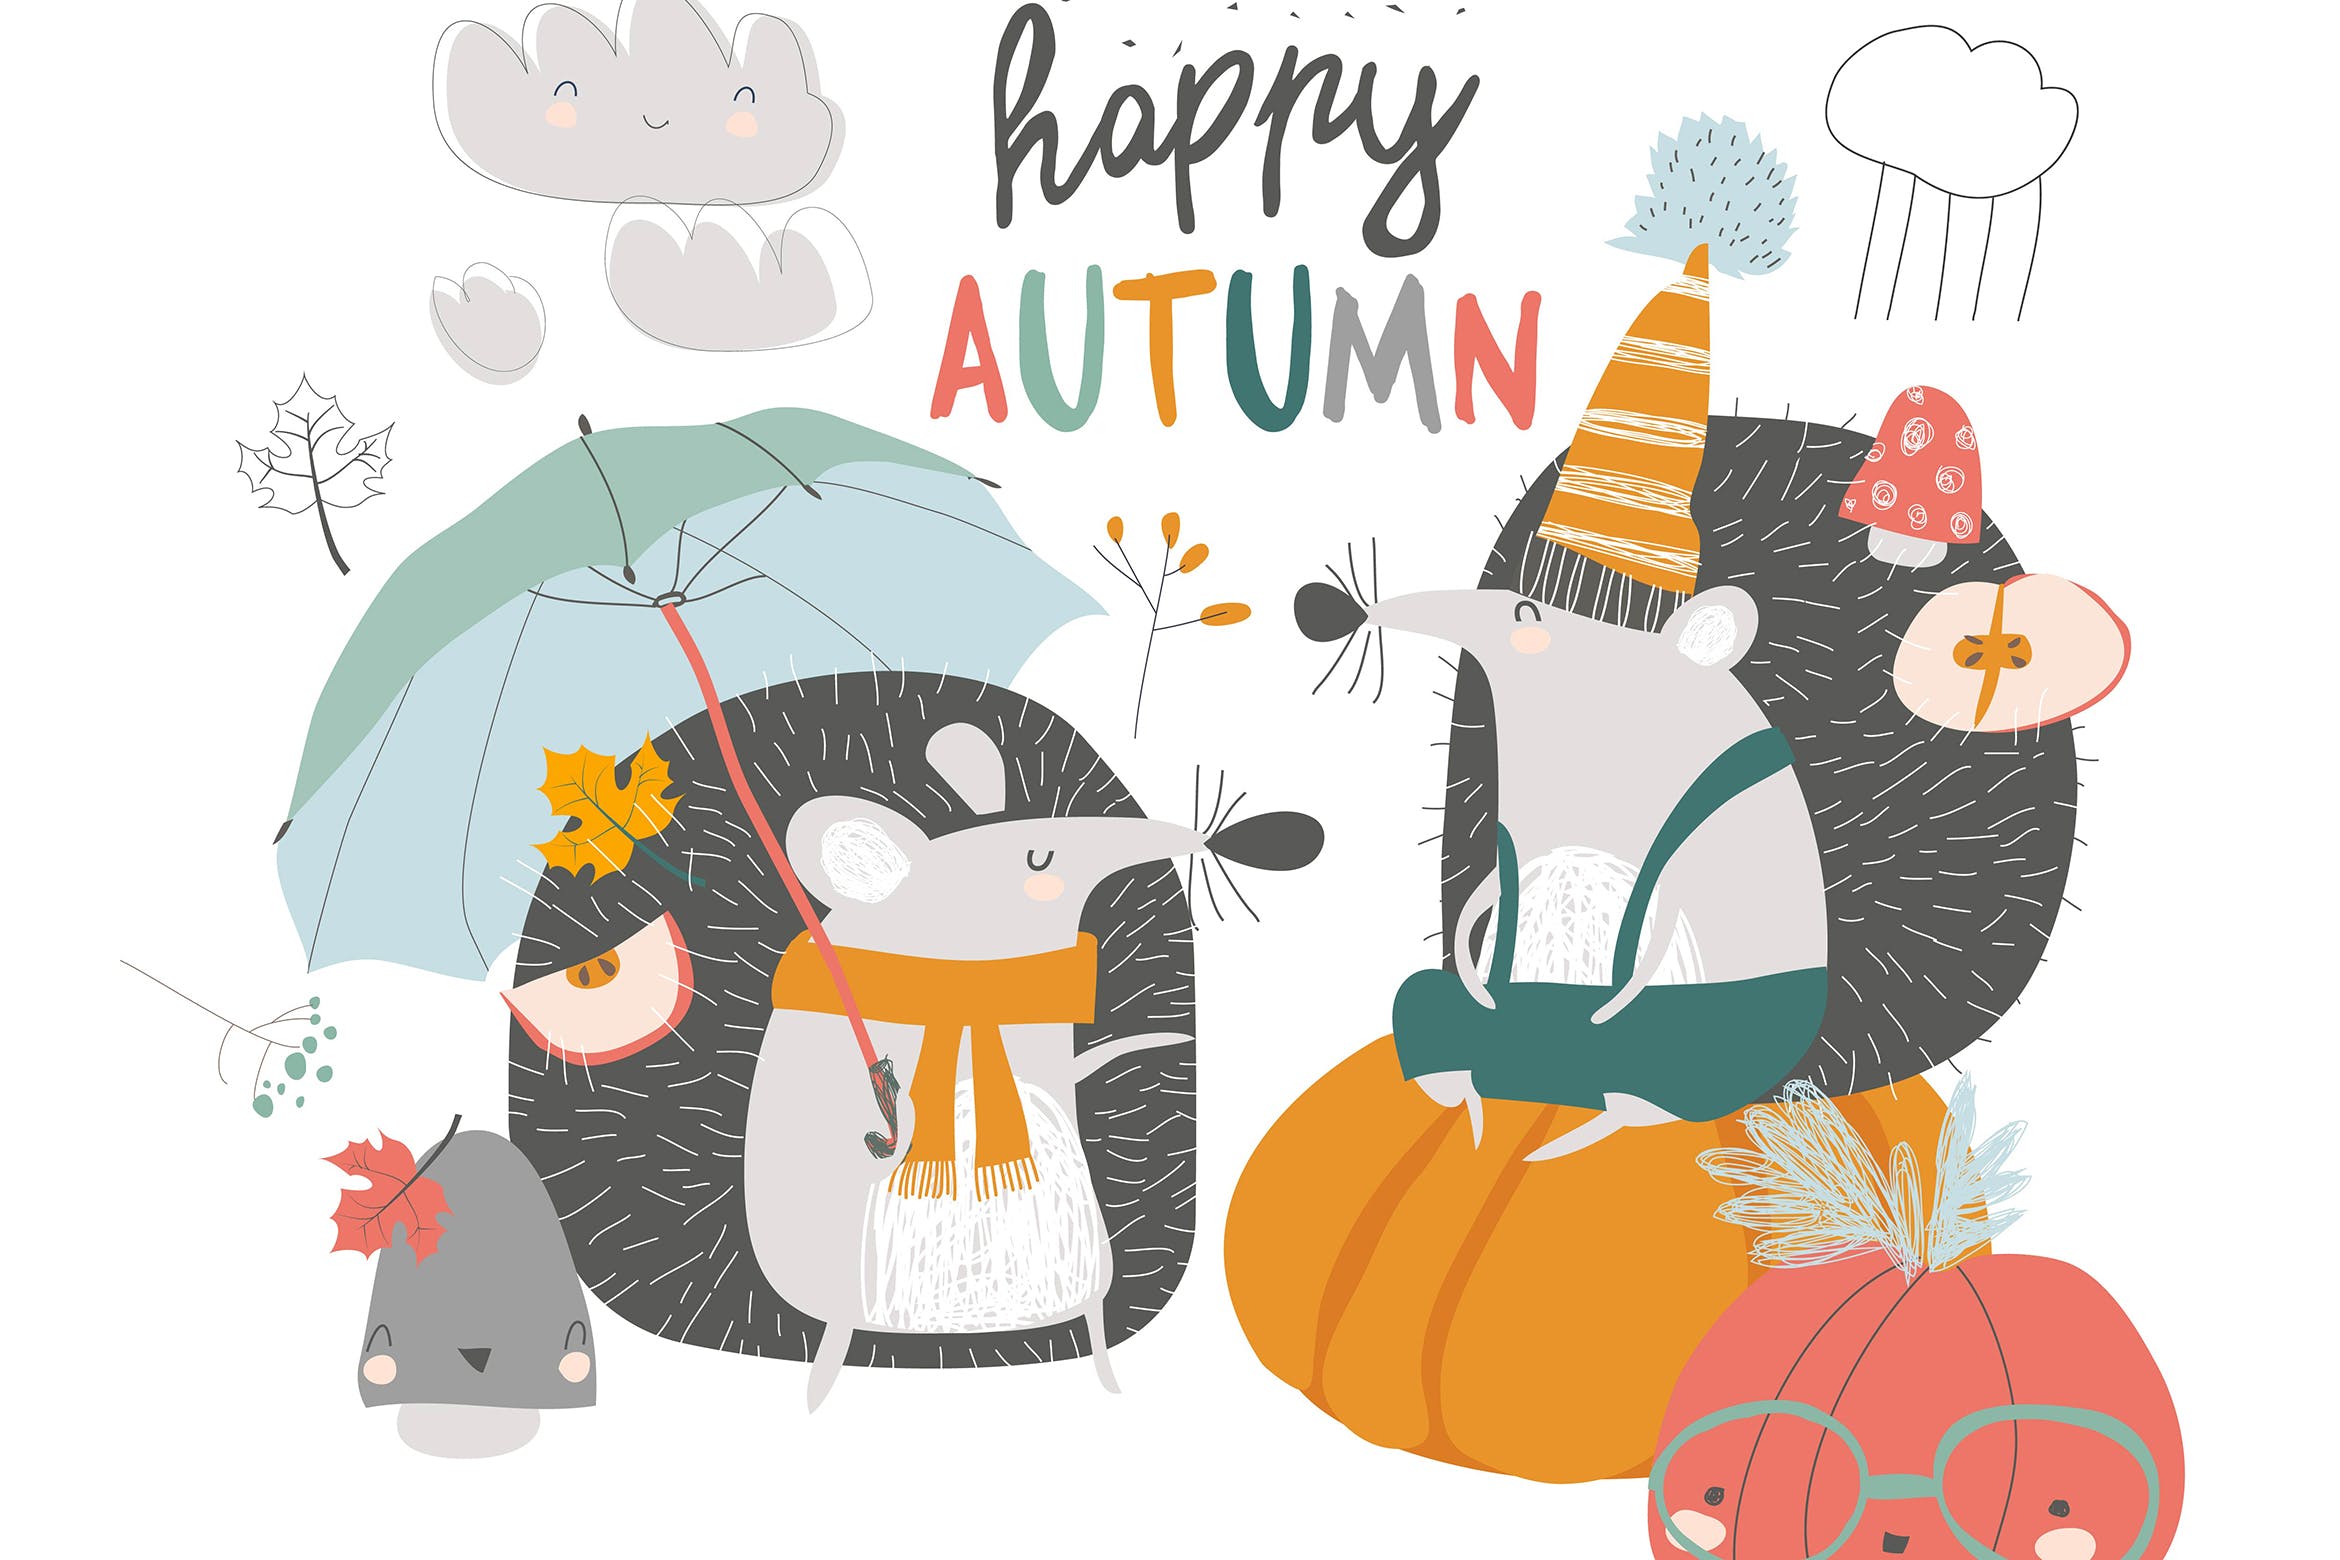 可爱秋日刺猬&南瓜手绘矢量插画素材库精选设计素材 Cute autumn Hedgehogs with umbrella and pumpkins.插图